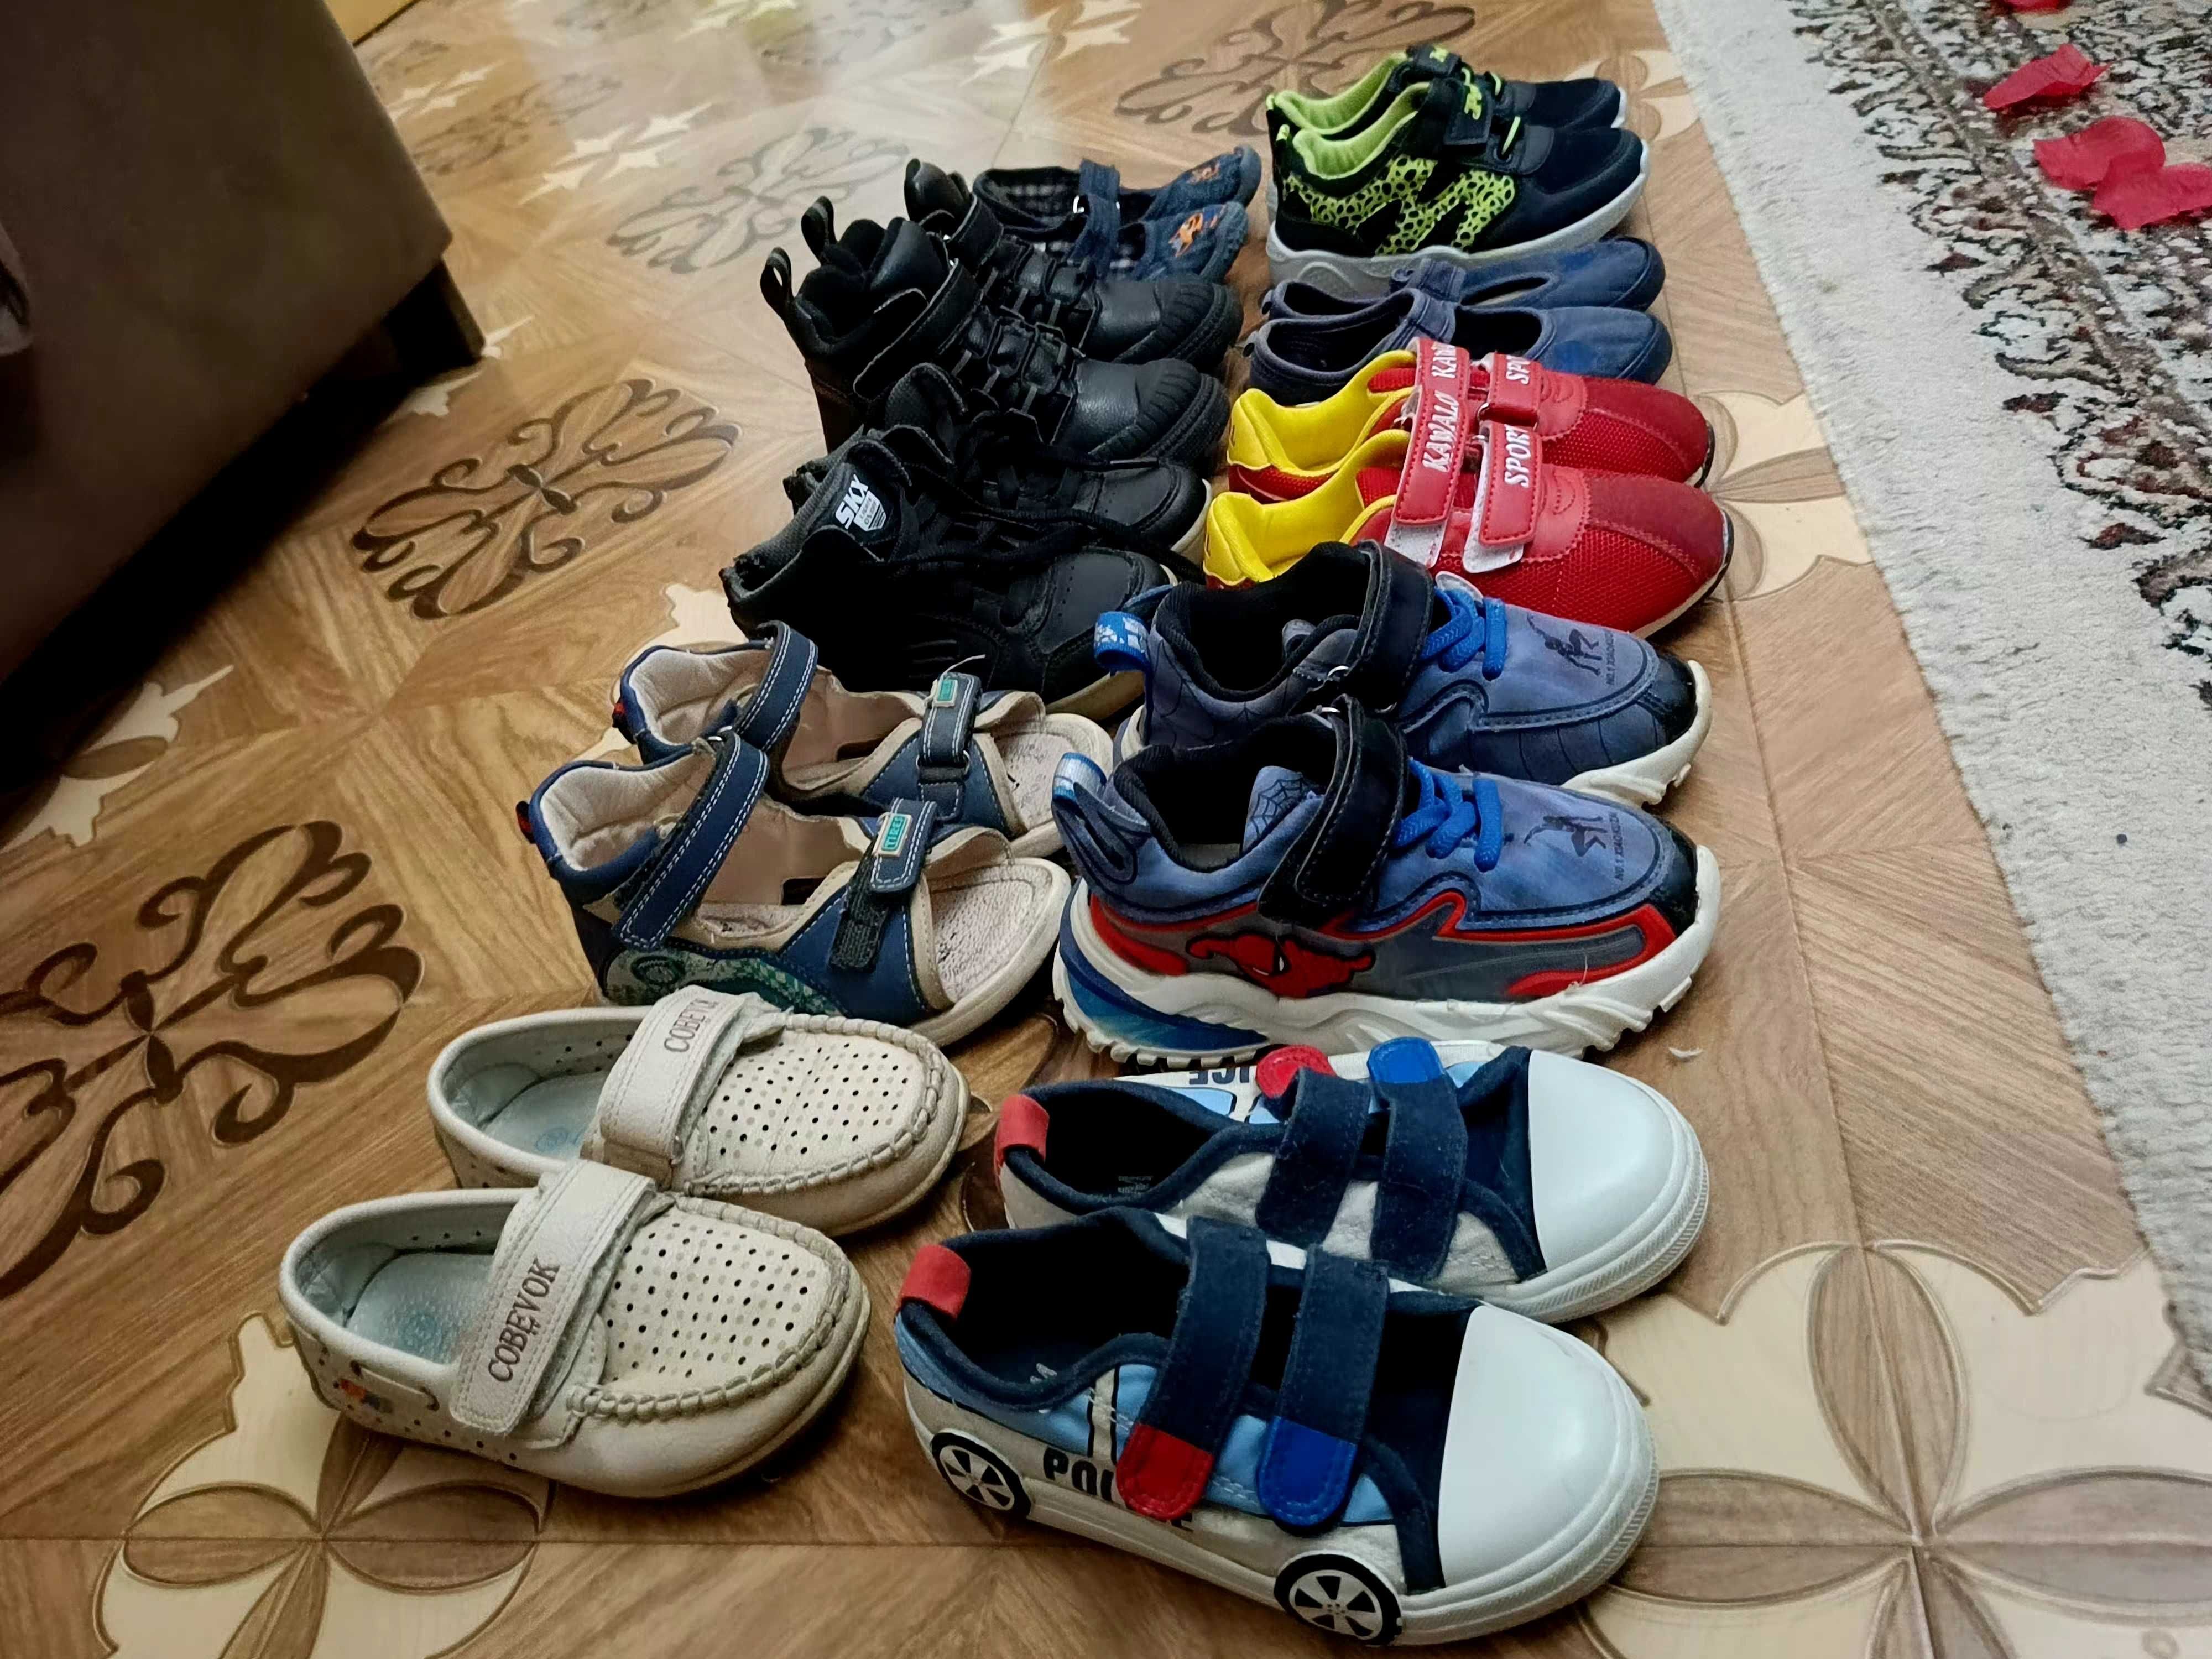 Обувь для мальчика, набор от 26-28 размера.